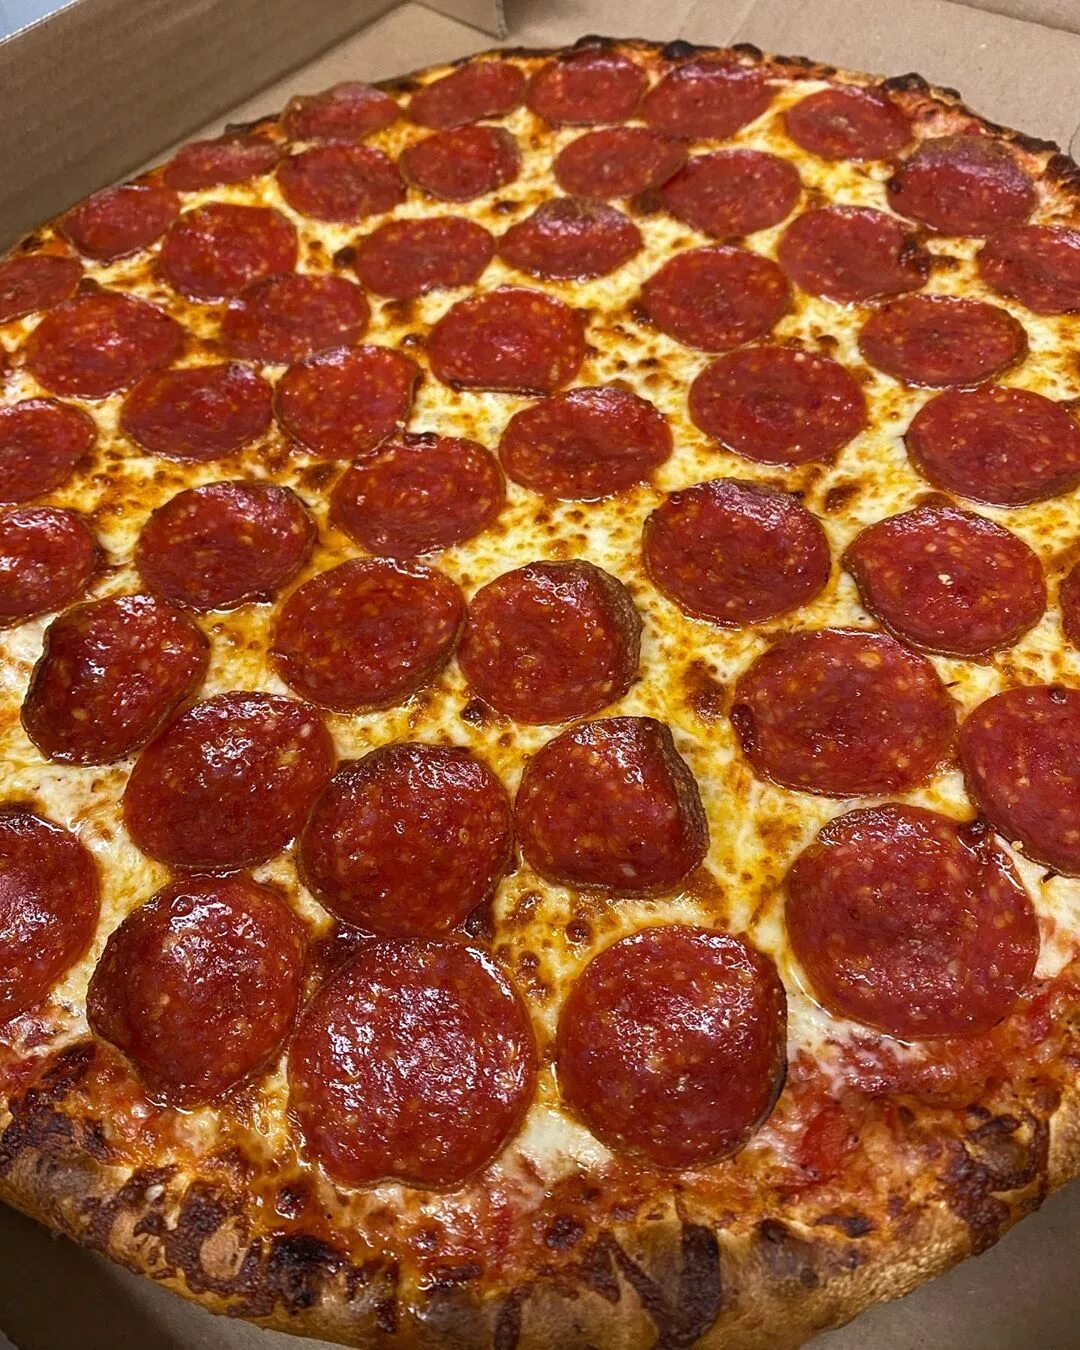 фото пиццы пепперони на столе дома фото 115